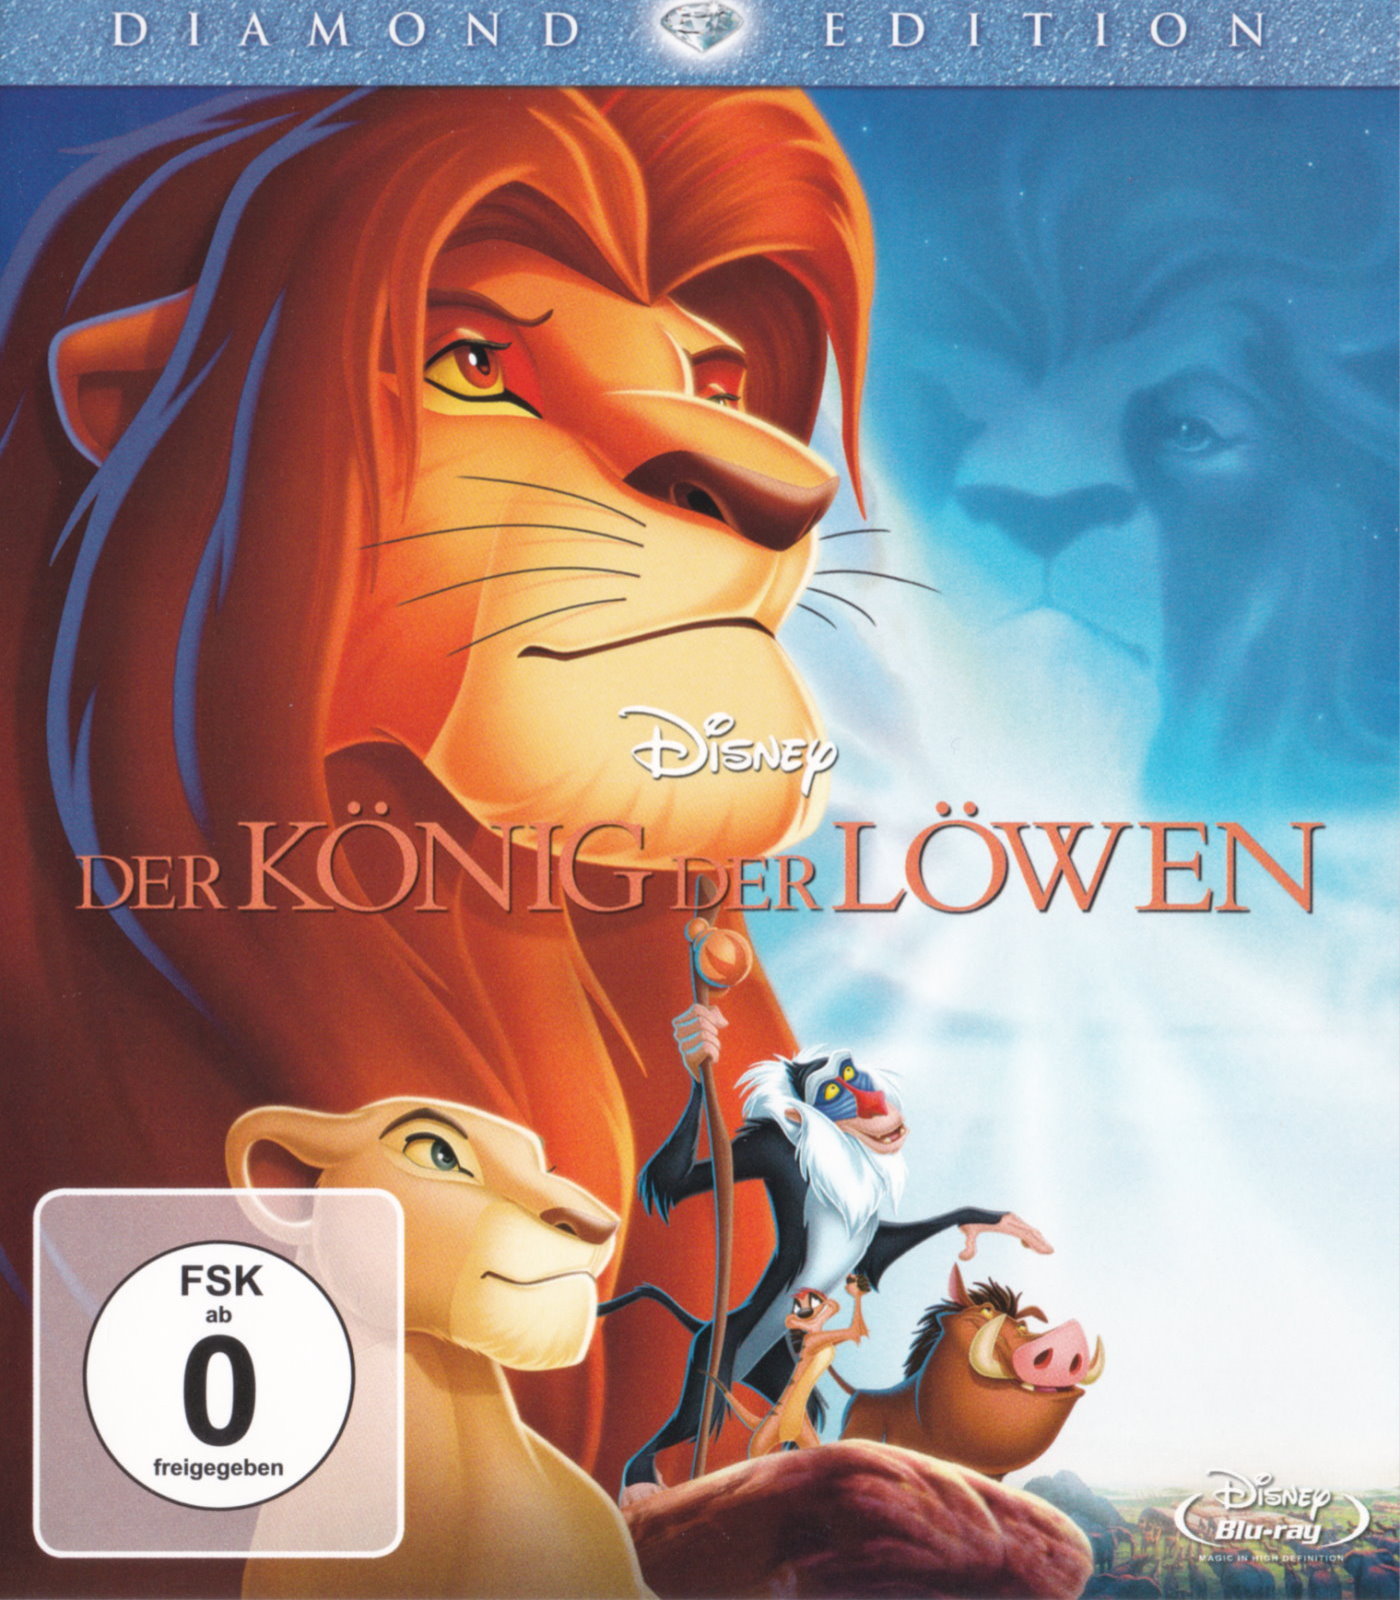 Cover - Der König der Löwen.jpg